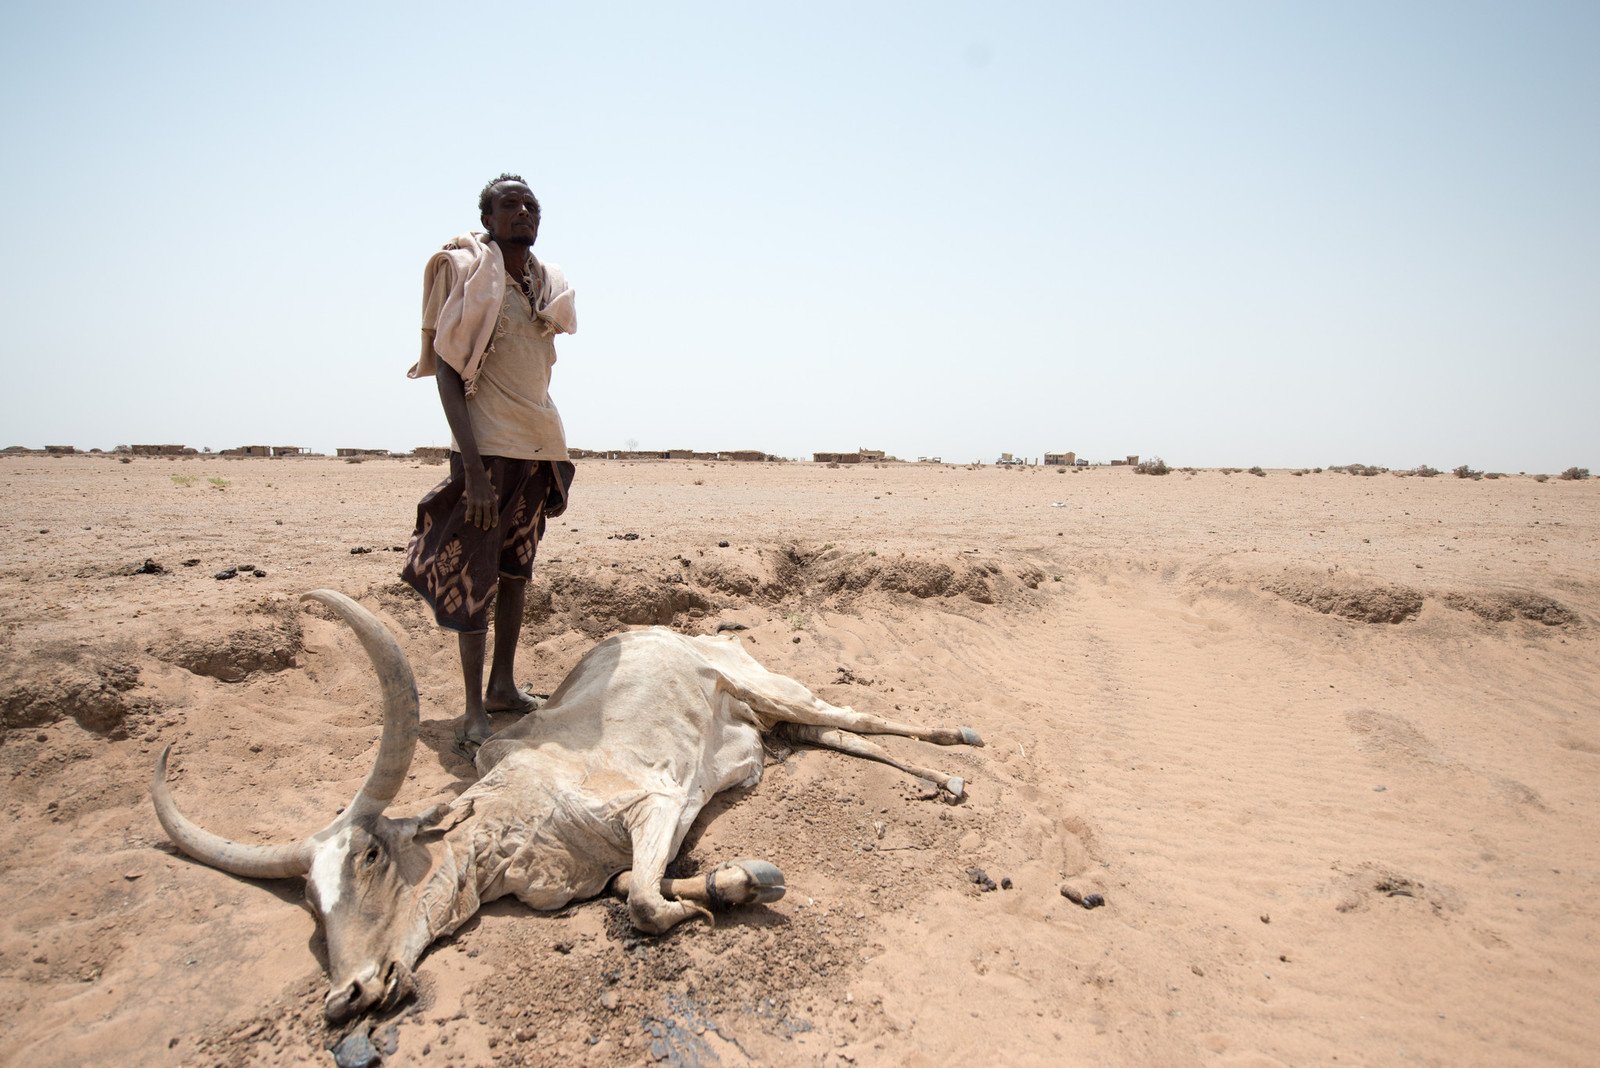 气候变化加剧了厄尔尼诺现象，令埃塞俄比亚的索马里地区连续多年出现严重旱情，牧民缺水缺粮，赖以为生的牲畜，不是濒死就是已经死亡。乐施会自2011年起在当地协助农户及牧民解决水荒、发展生计、加强防灾意识及自救能力。（照片︰潘蔚能 / 乐施会义务摄影师）